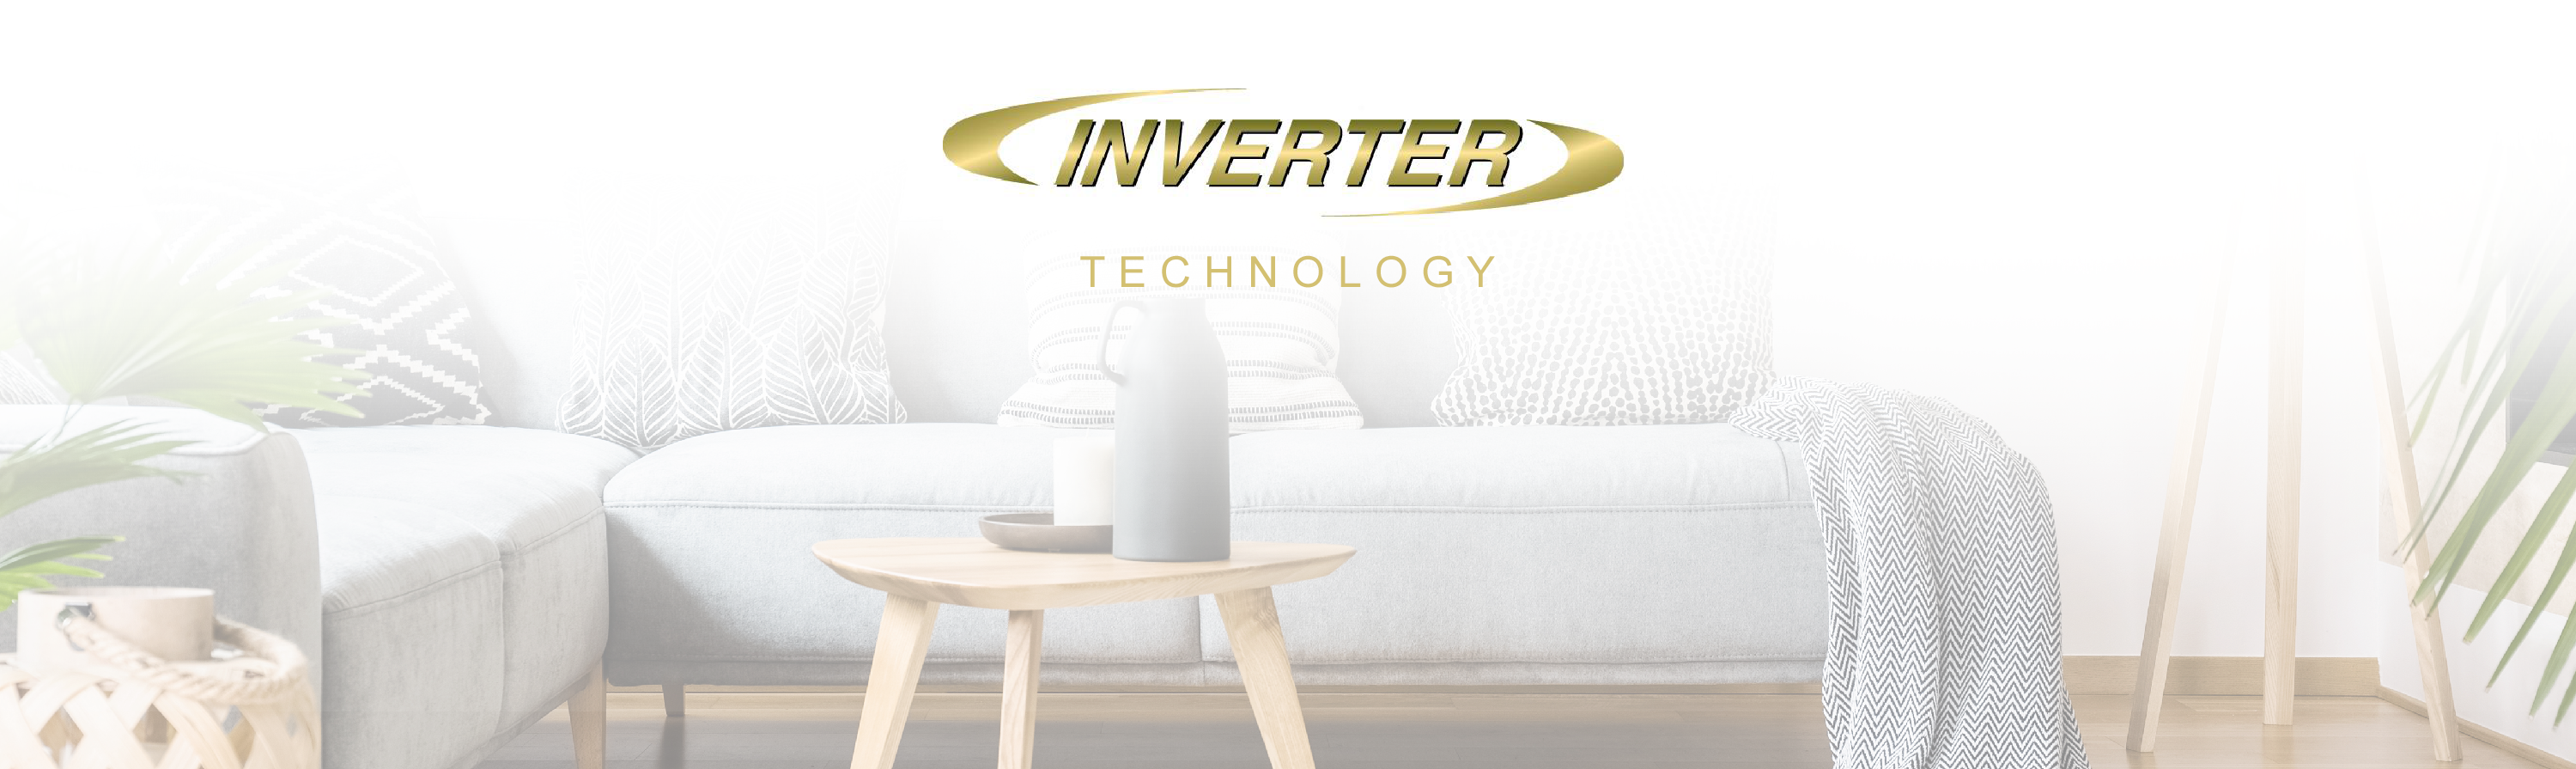 banner_web_inverter_logo